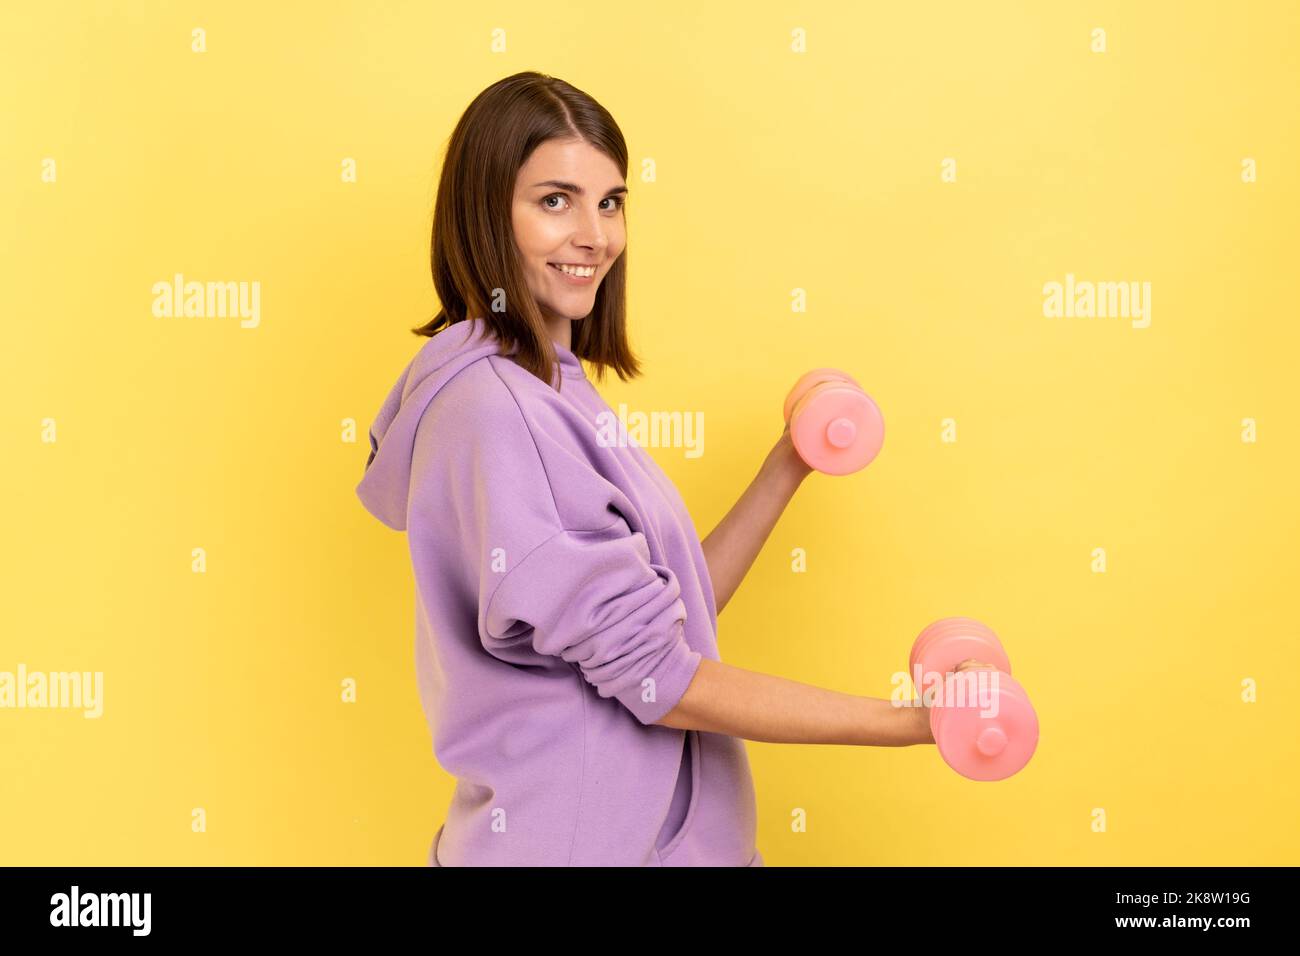 Seitenansicht einer Frau, die mit rosa Hanteln Fitness-Übungen macht, Hände trainiert, mit einem Lächeln auf die Kamera blickt und einen violetten Hoodie trägt. Innenaufnahme des Studios isoliert auf gelbem Hintergrund. Stockfoto